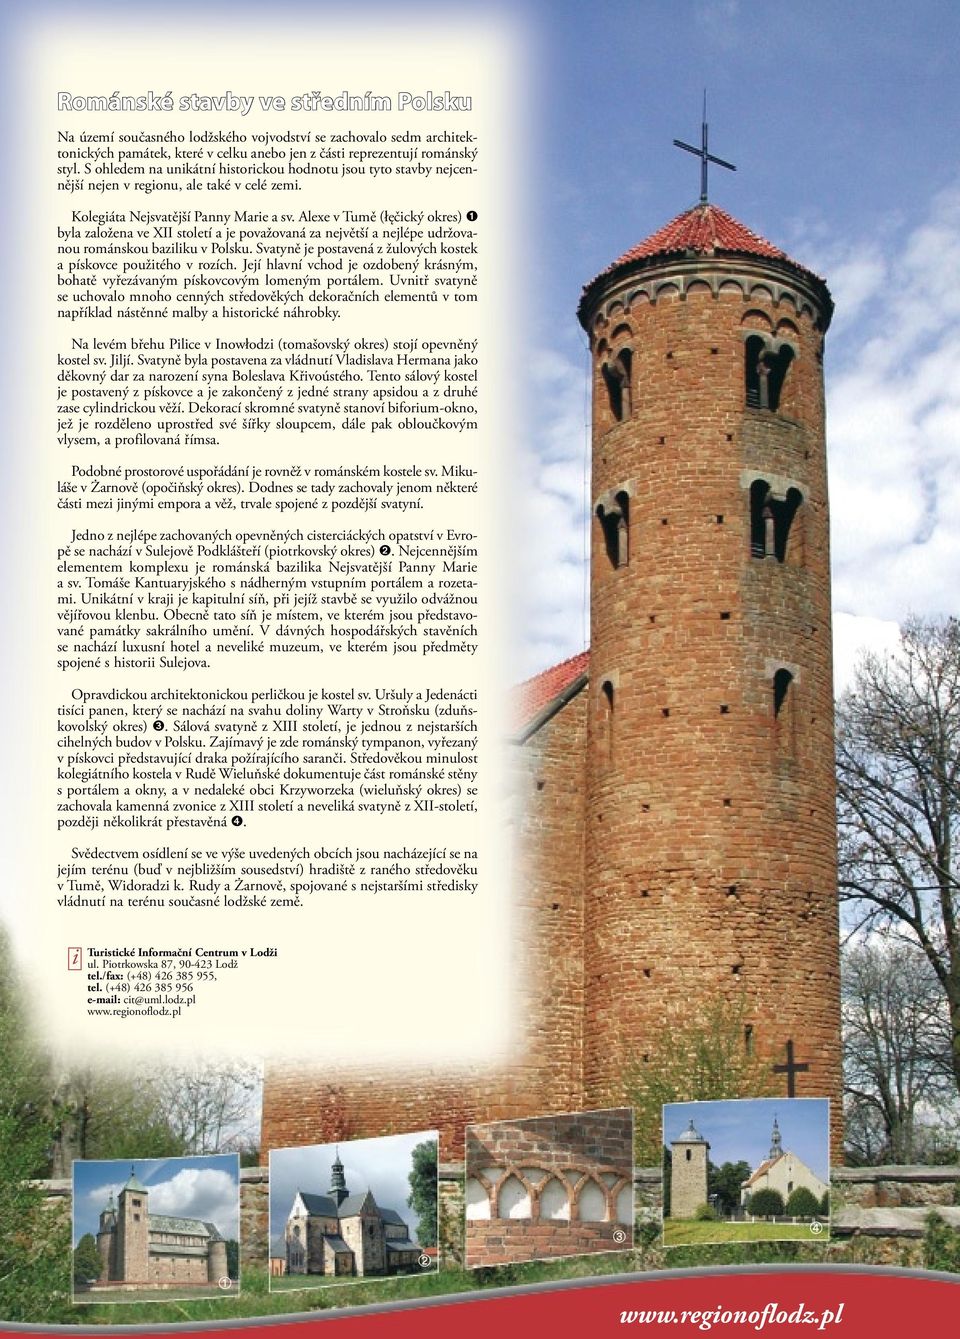 Alexe v Tumě (łęčcký okres) byla založena ve XII století a je považovaná za největší a nejlépe udržovanou románskou bazlku v Polsku.